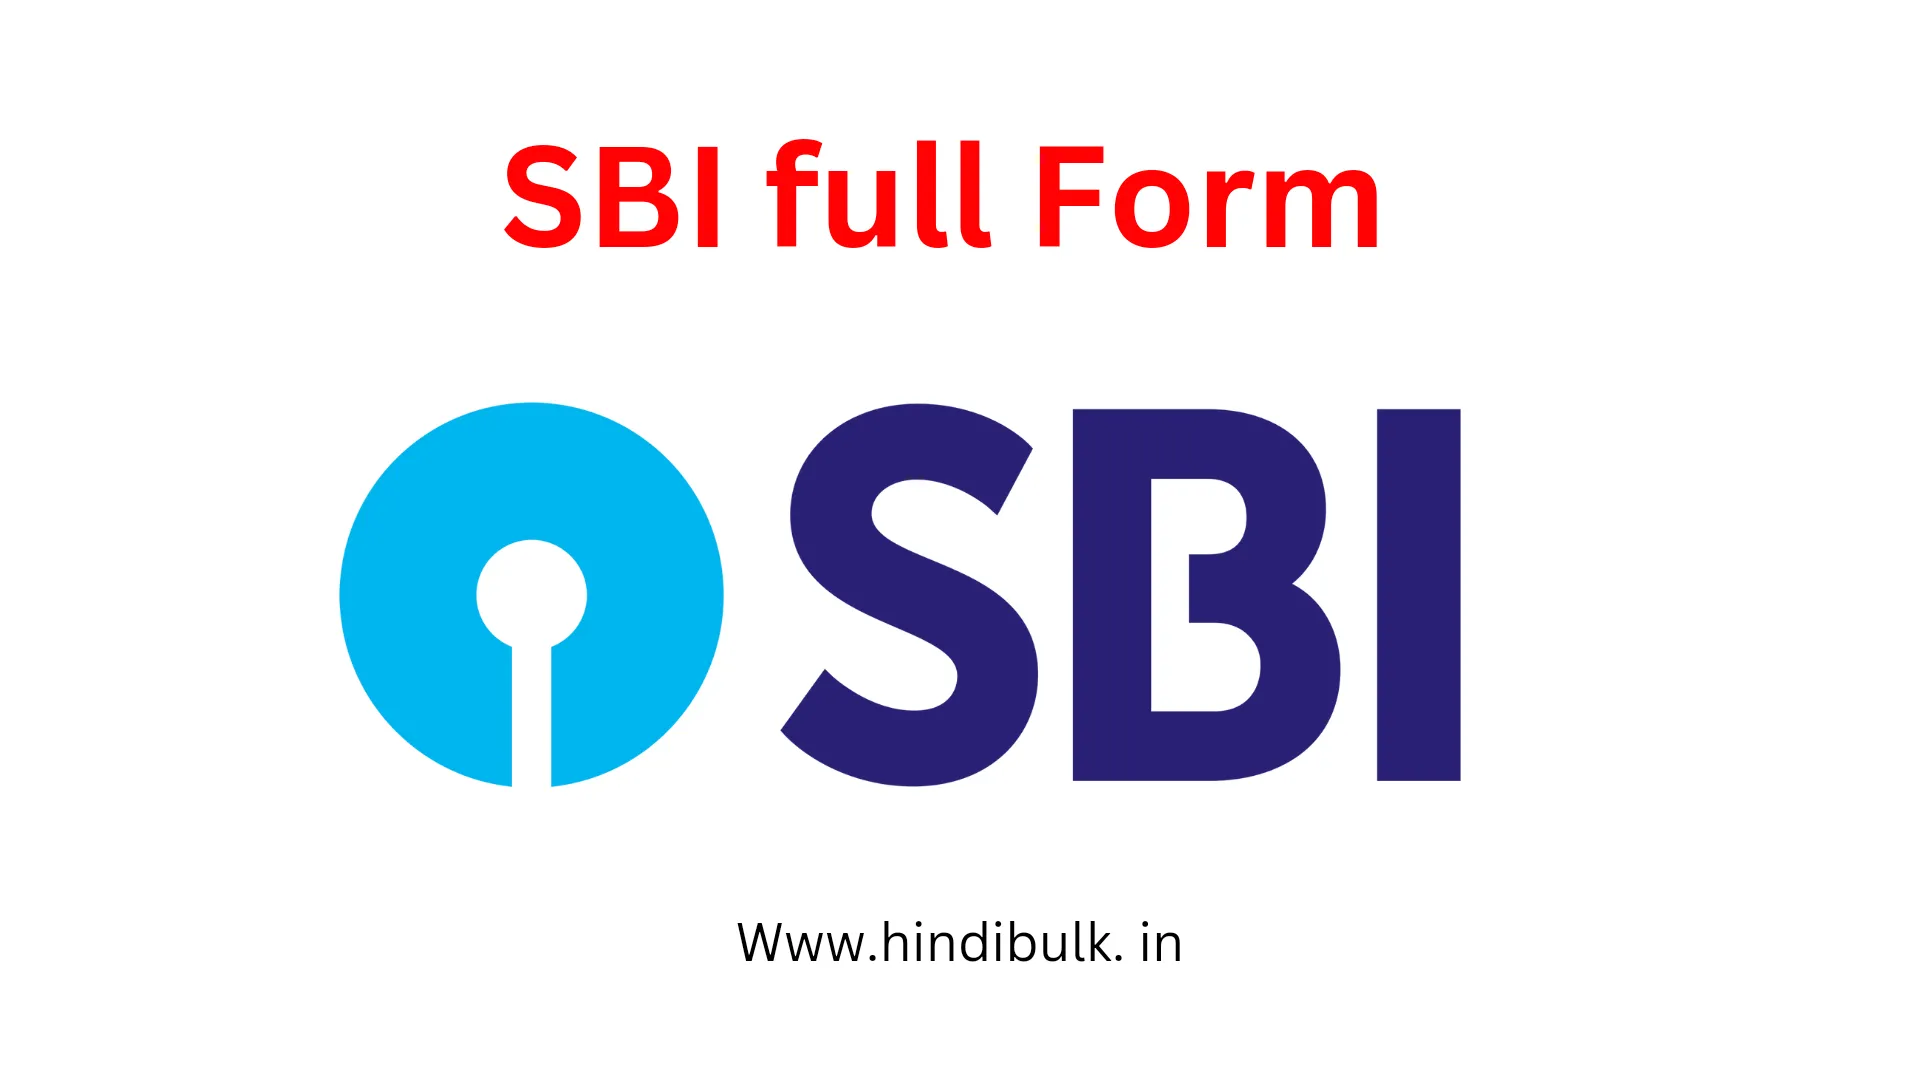 SBI Full Form in Hindi | एसबीआई की फुल फॉर्म क्या है?